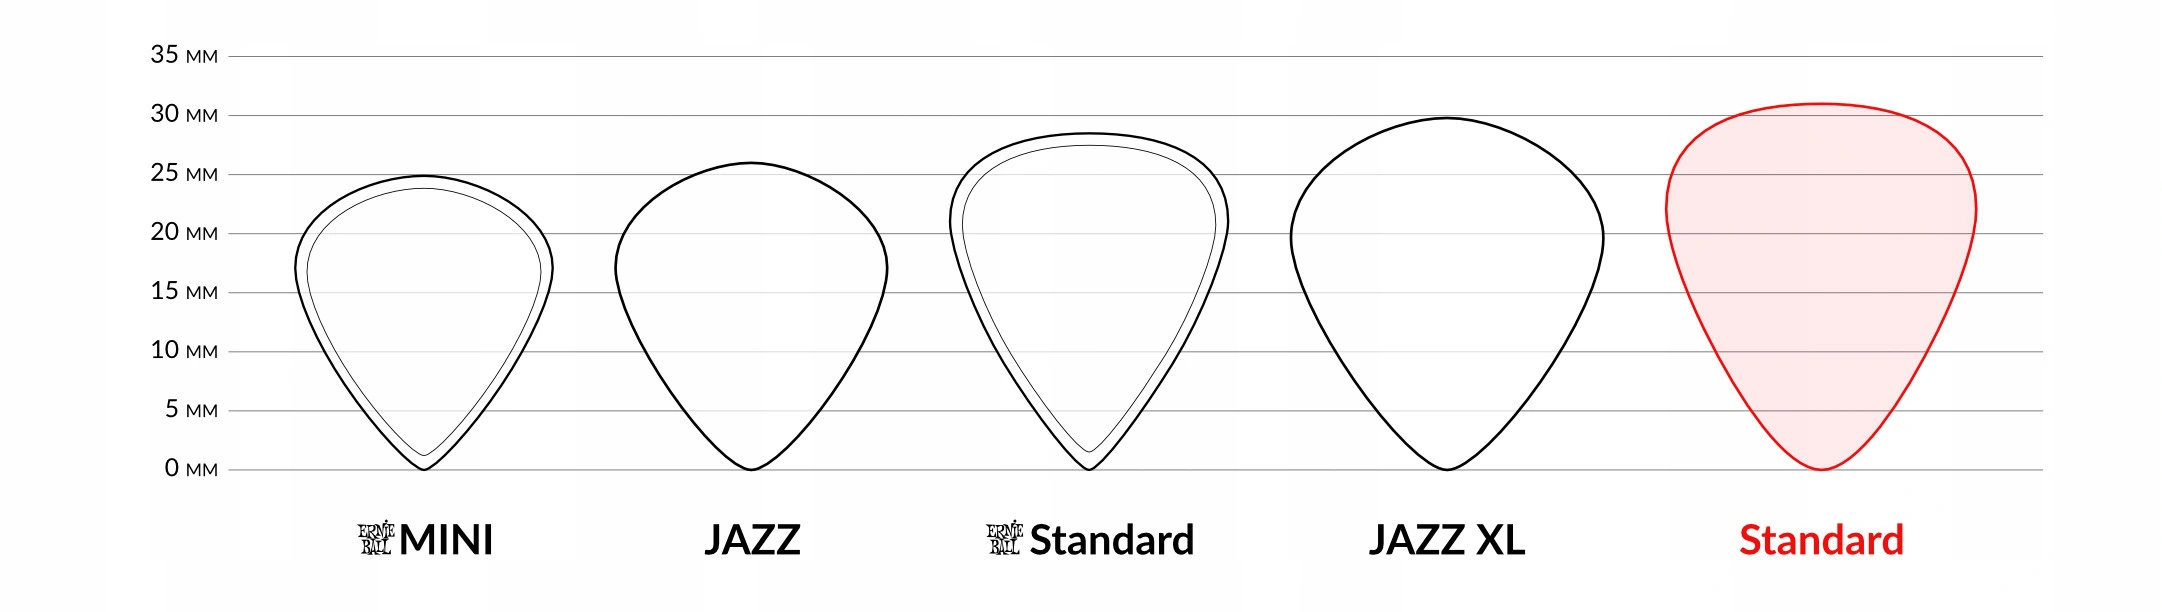 Kształty kostek gitarowych - Standard